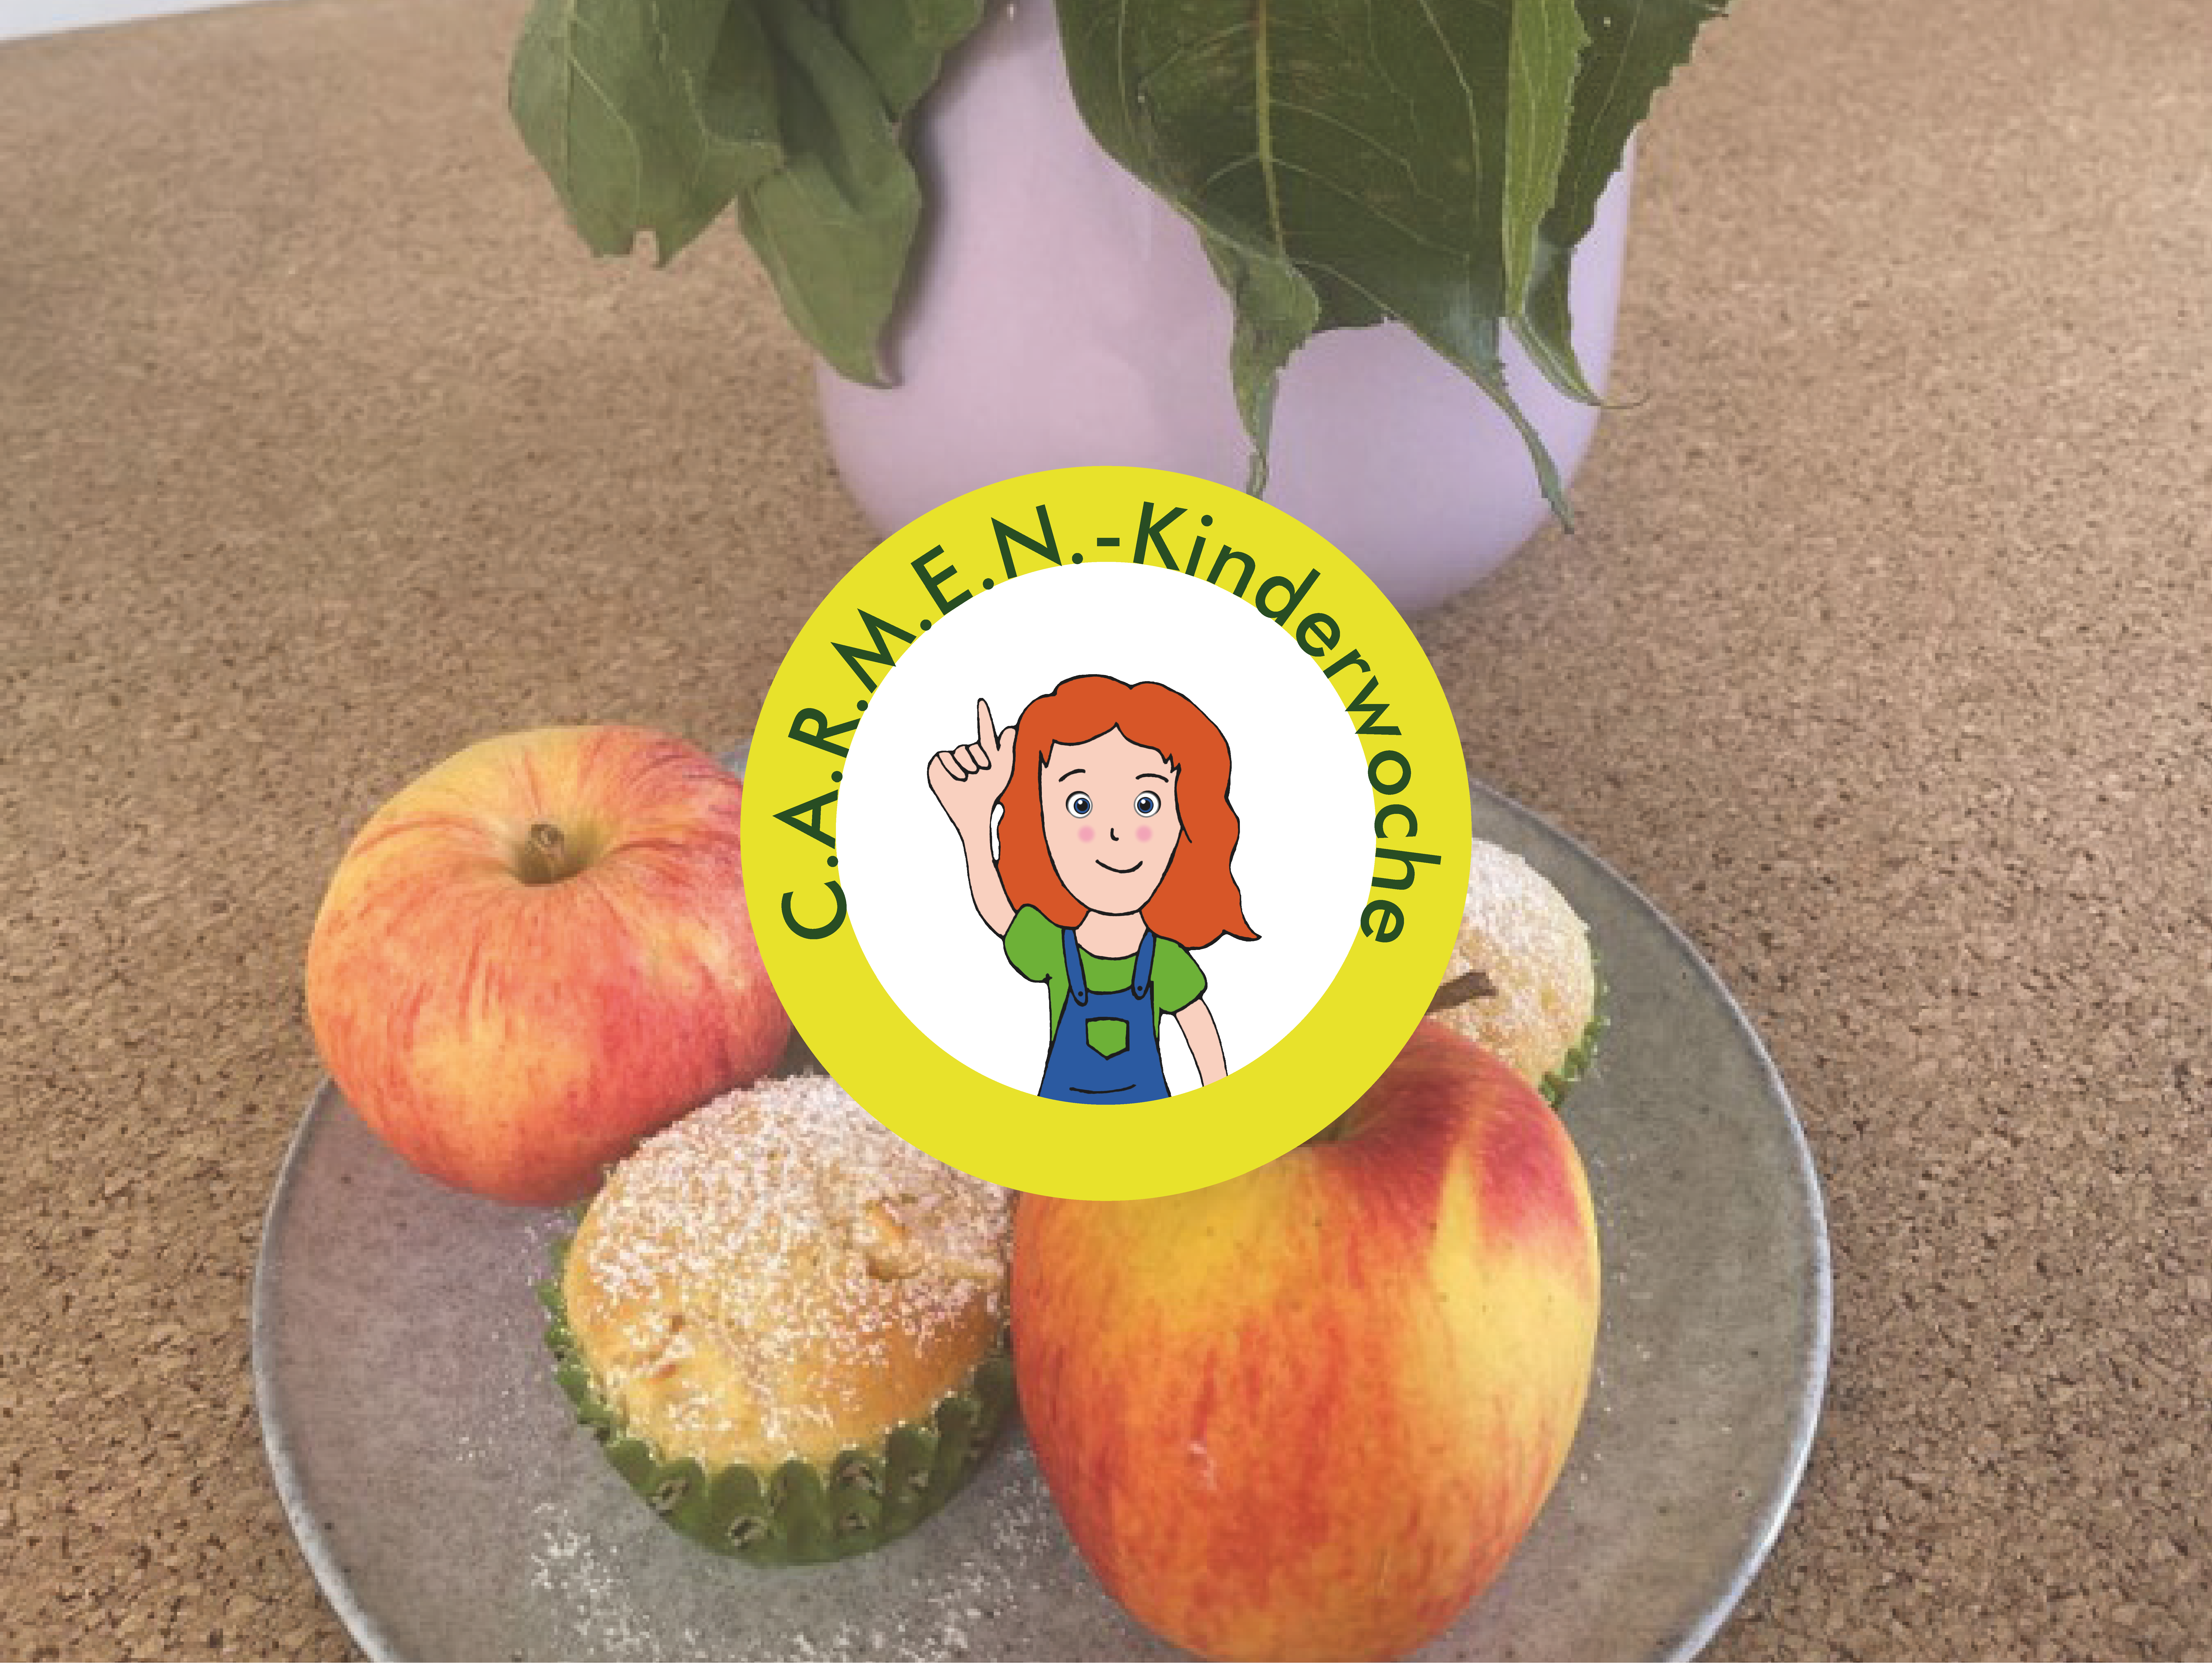 C.A.R.M.E.N.-Kinderwoche: Apfel-Muffins mit selbst gepflückten Äpfeln